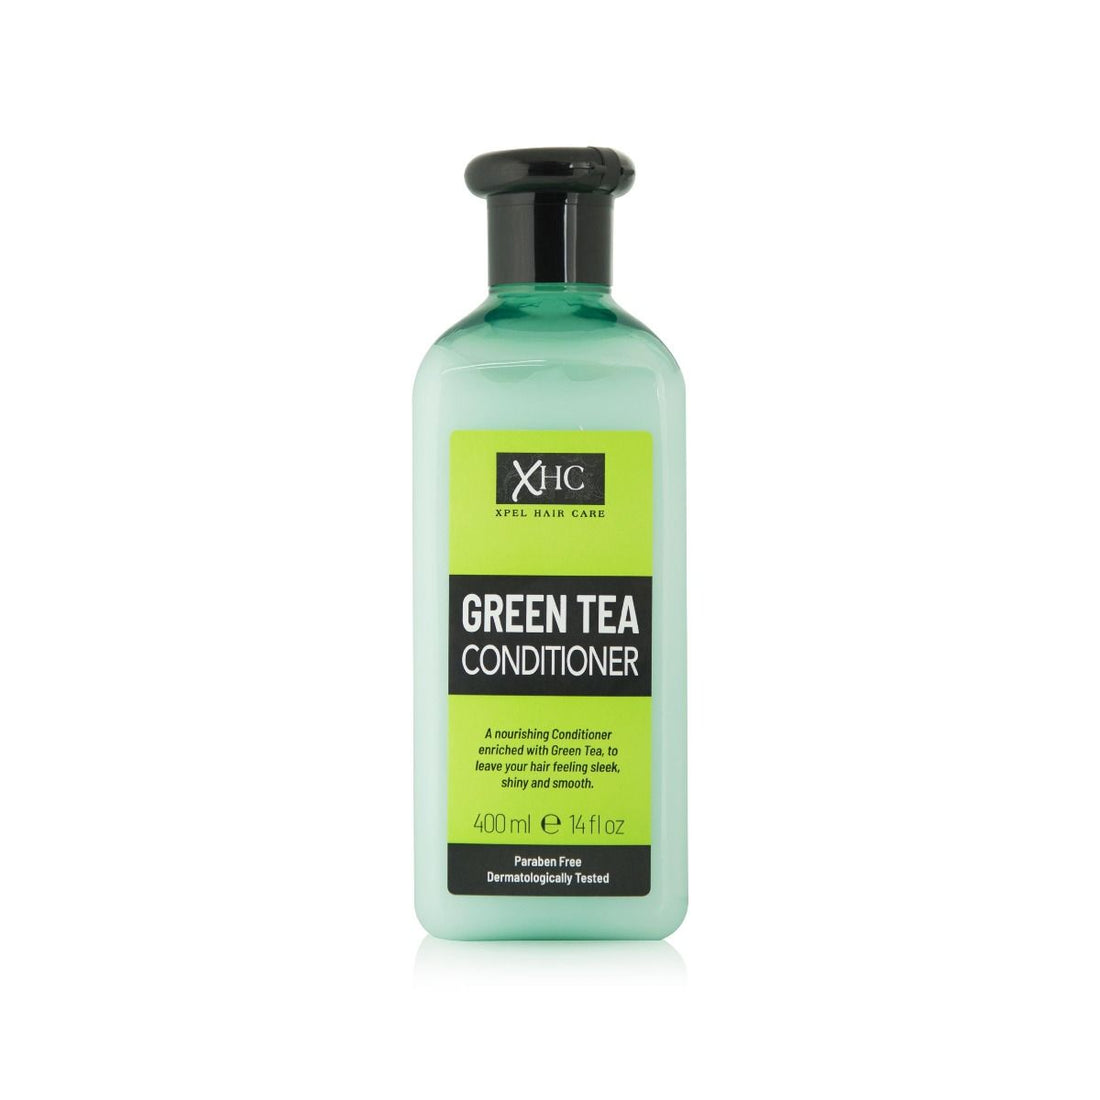 XHC Xpel Hair Care Green Tea Conditioner (400ml)